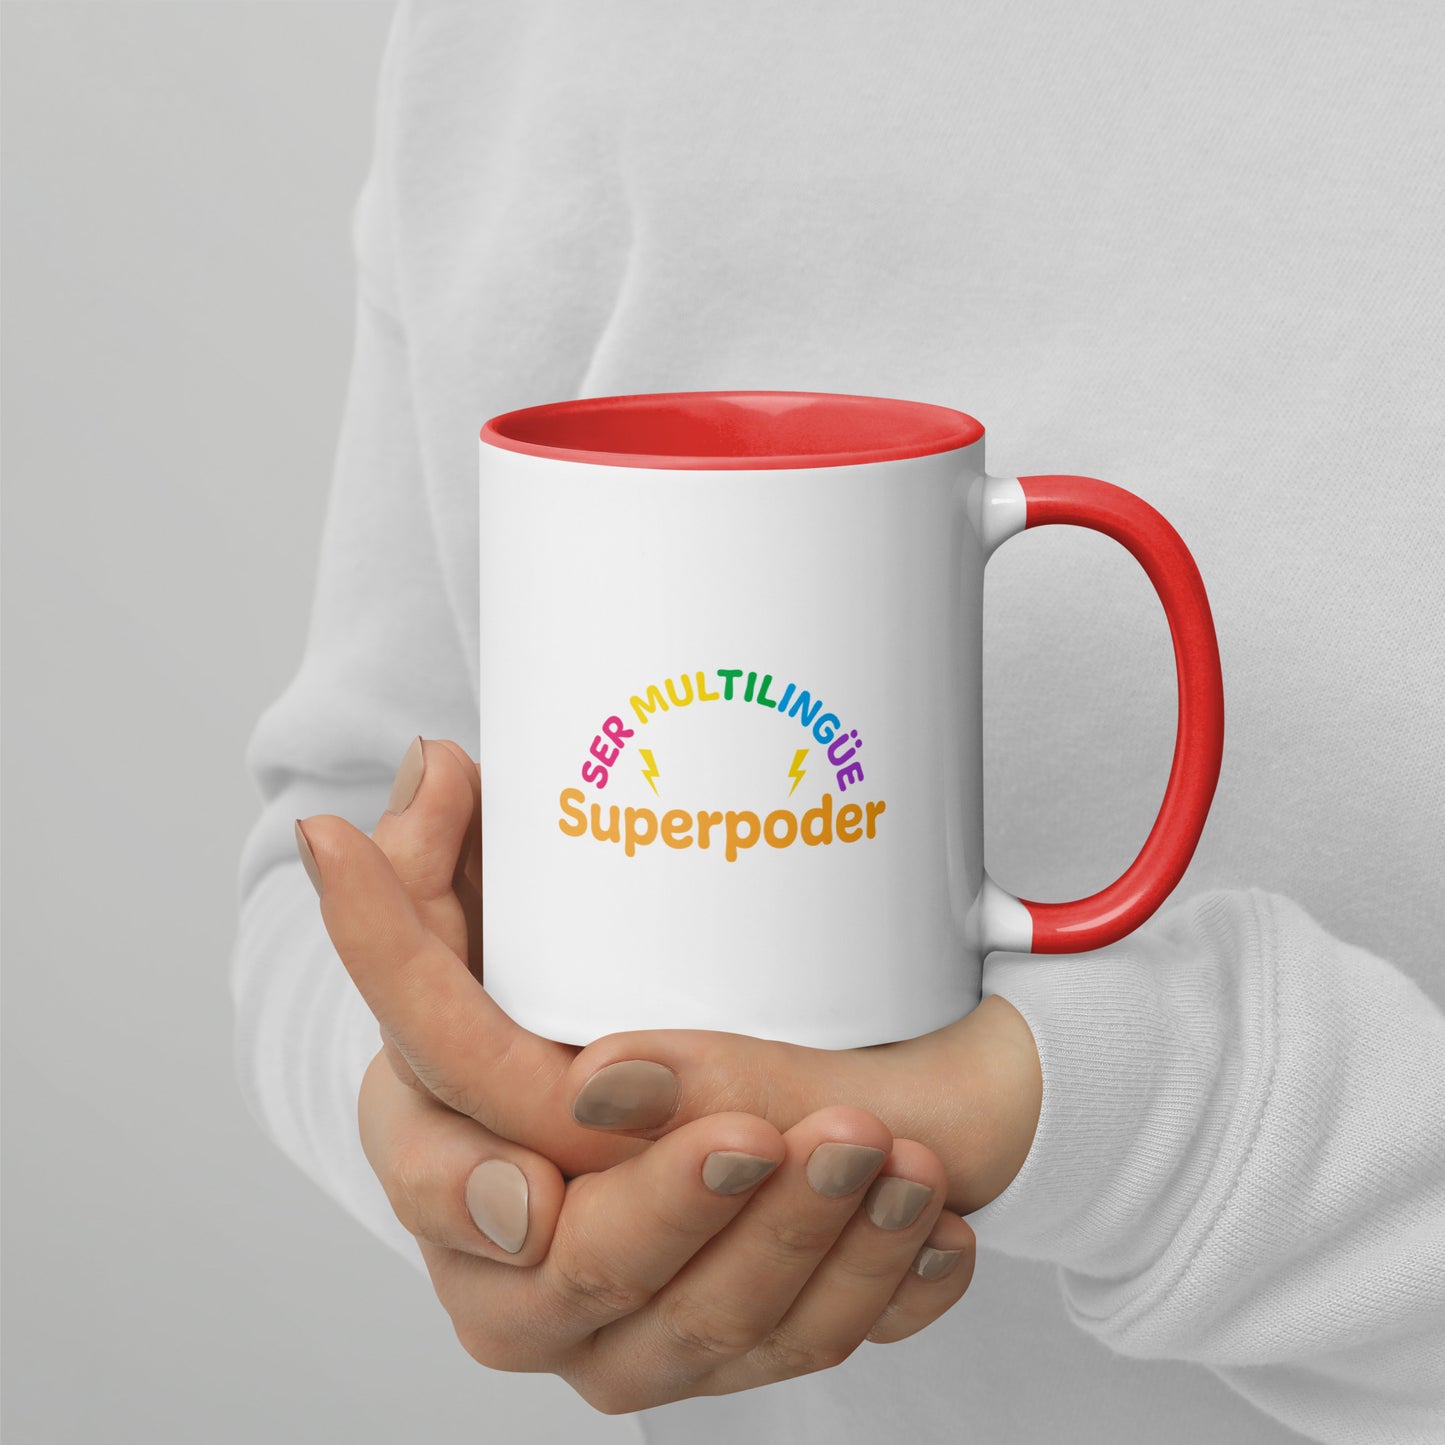 Superpoder  Mug with Color Inside